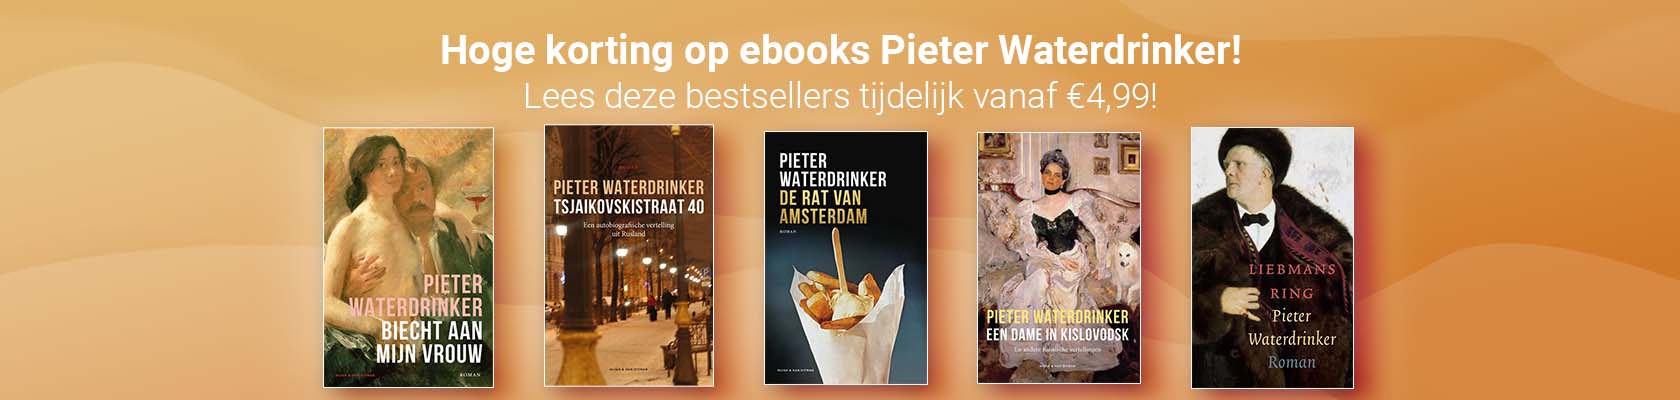 Hoge korting op ebooks Pieter Waterdrinker